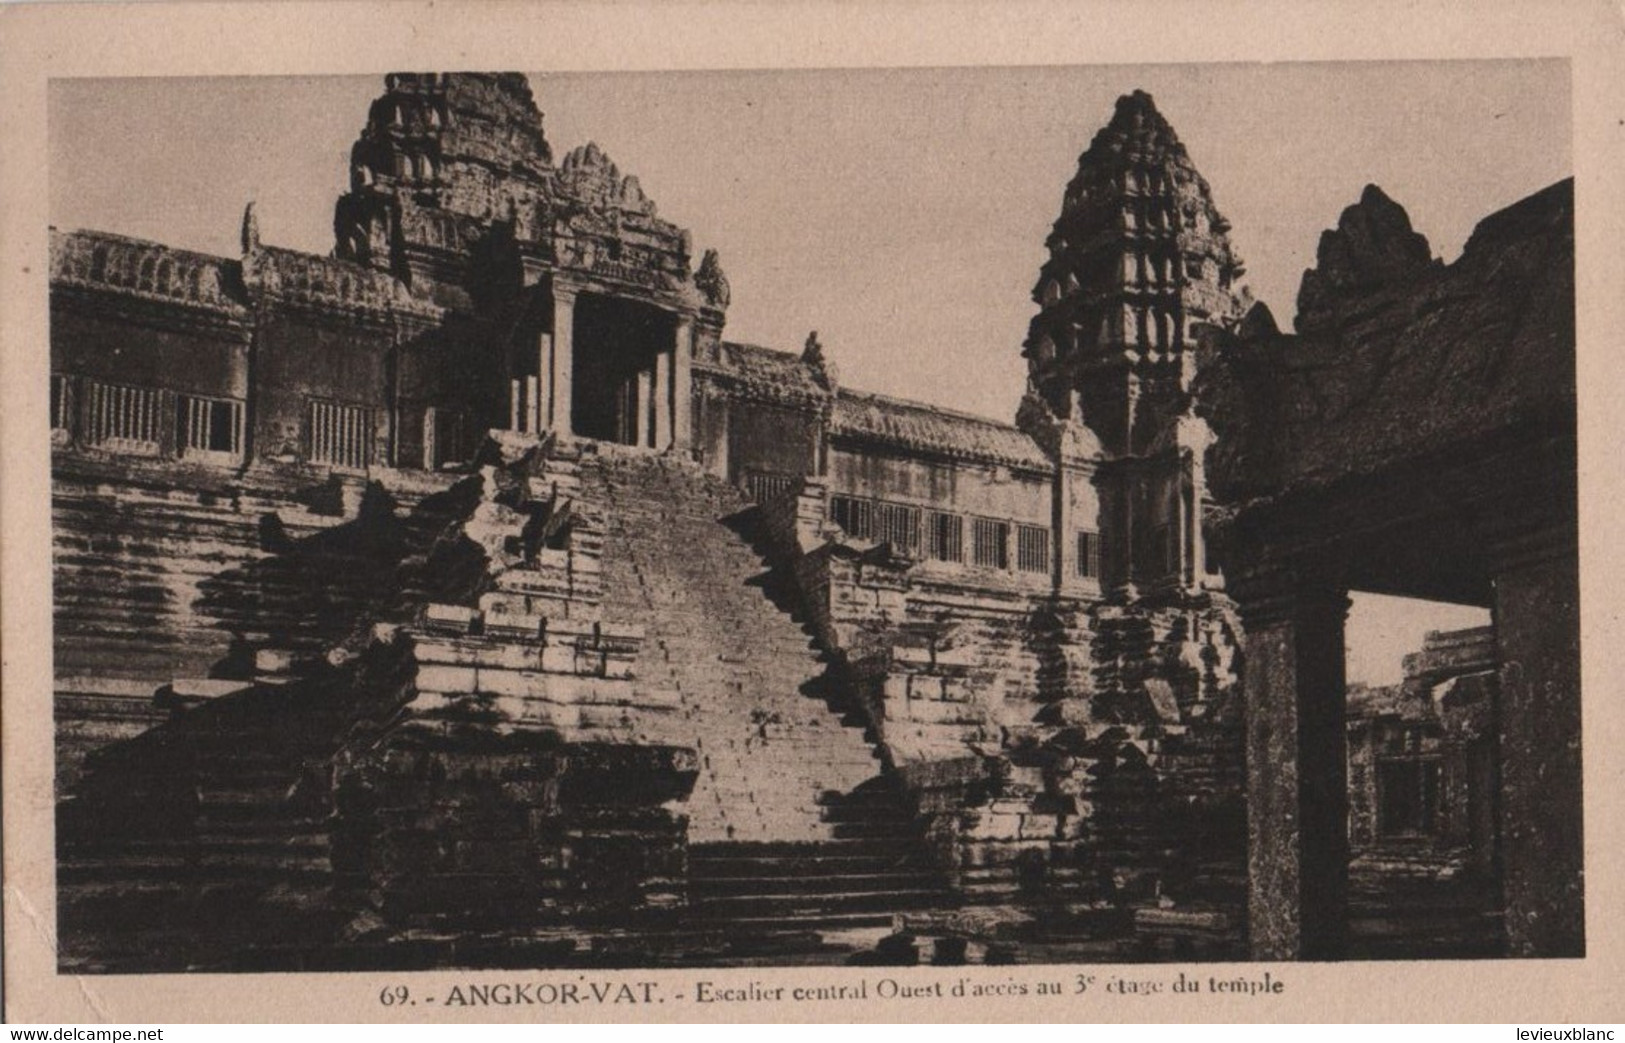 CAMBODGE /ANGKOR VAT/Esdcalier Central Ouest D'accés Au 3éme étage Du Temple /Vers 1910-1920     CPDIV358 - Camboya